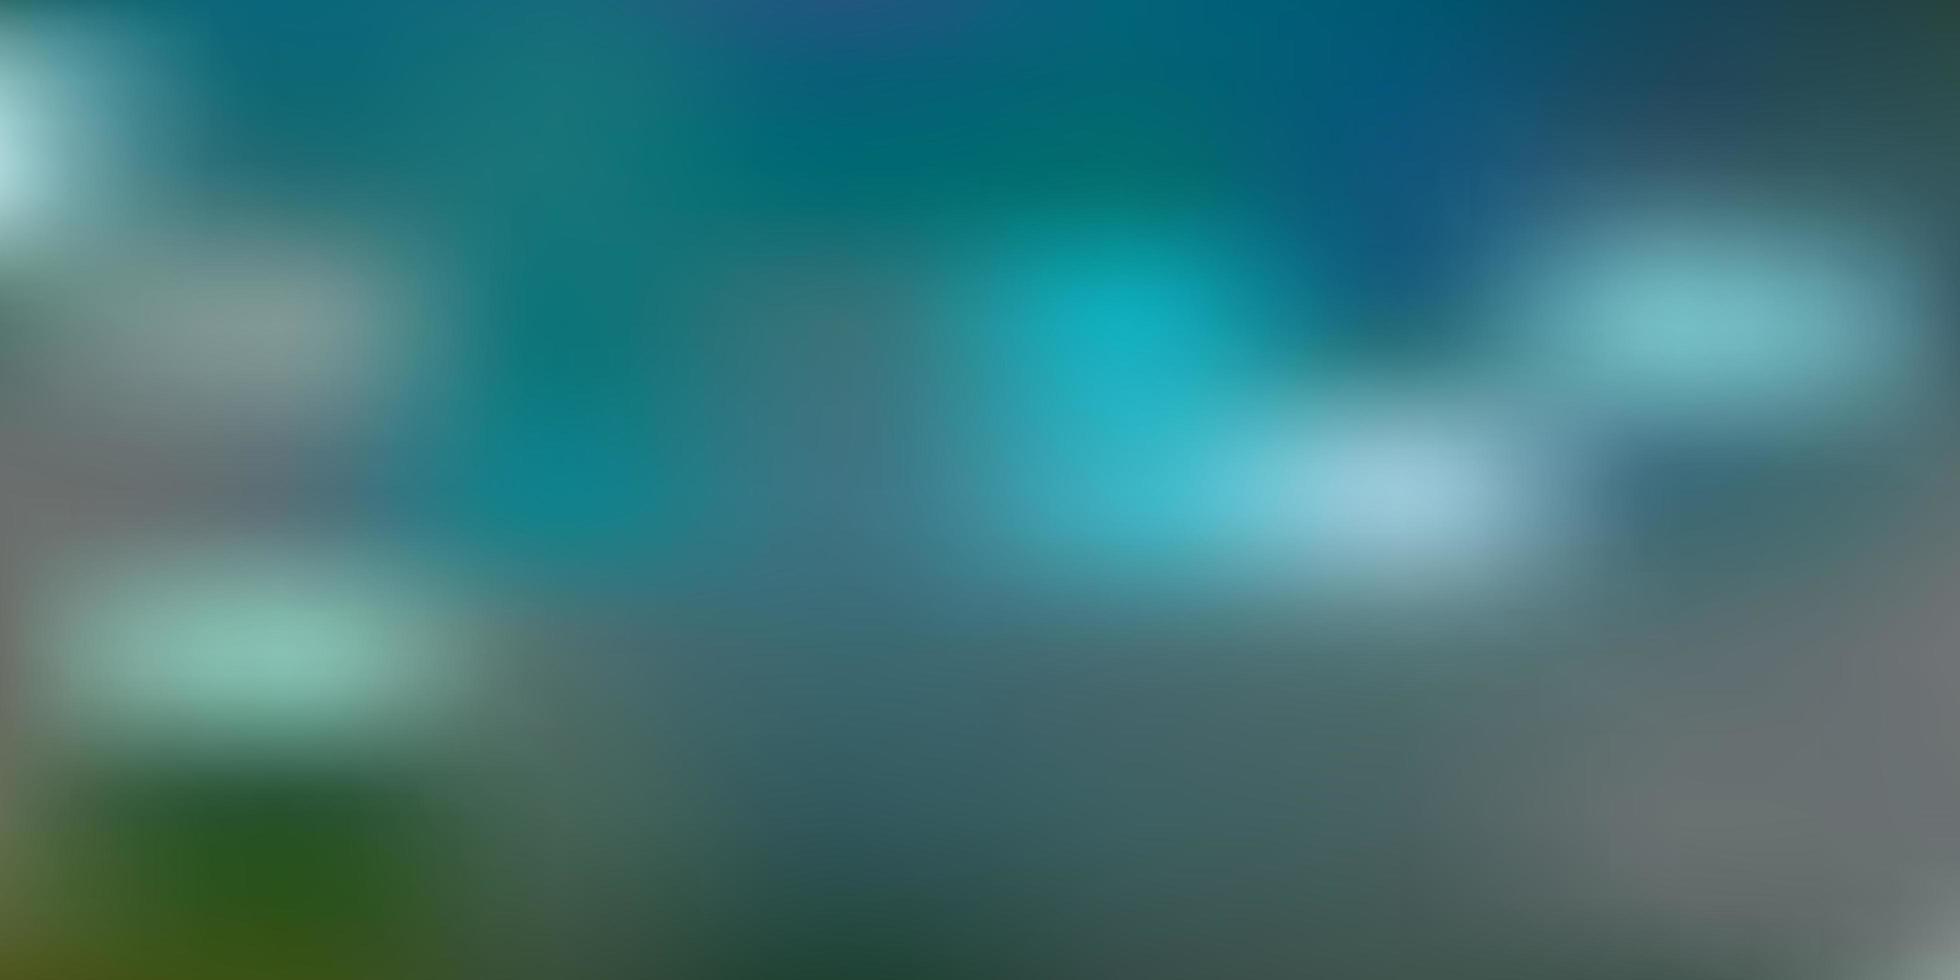 Light blue green vector gradient blur template